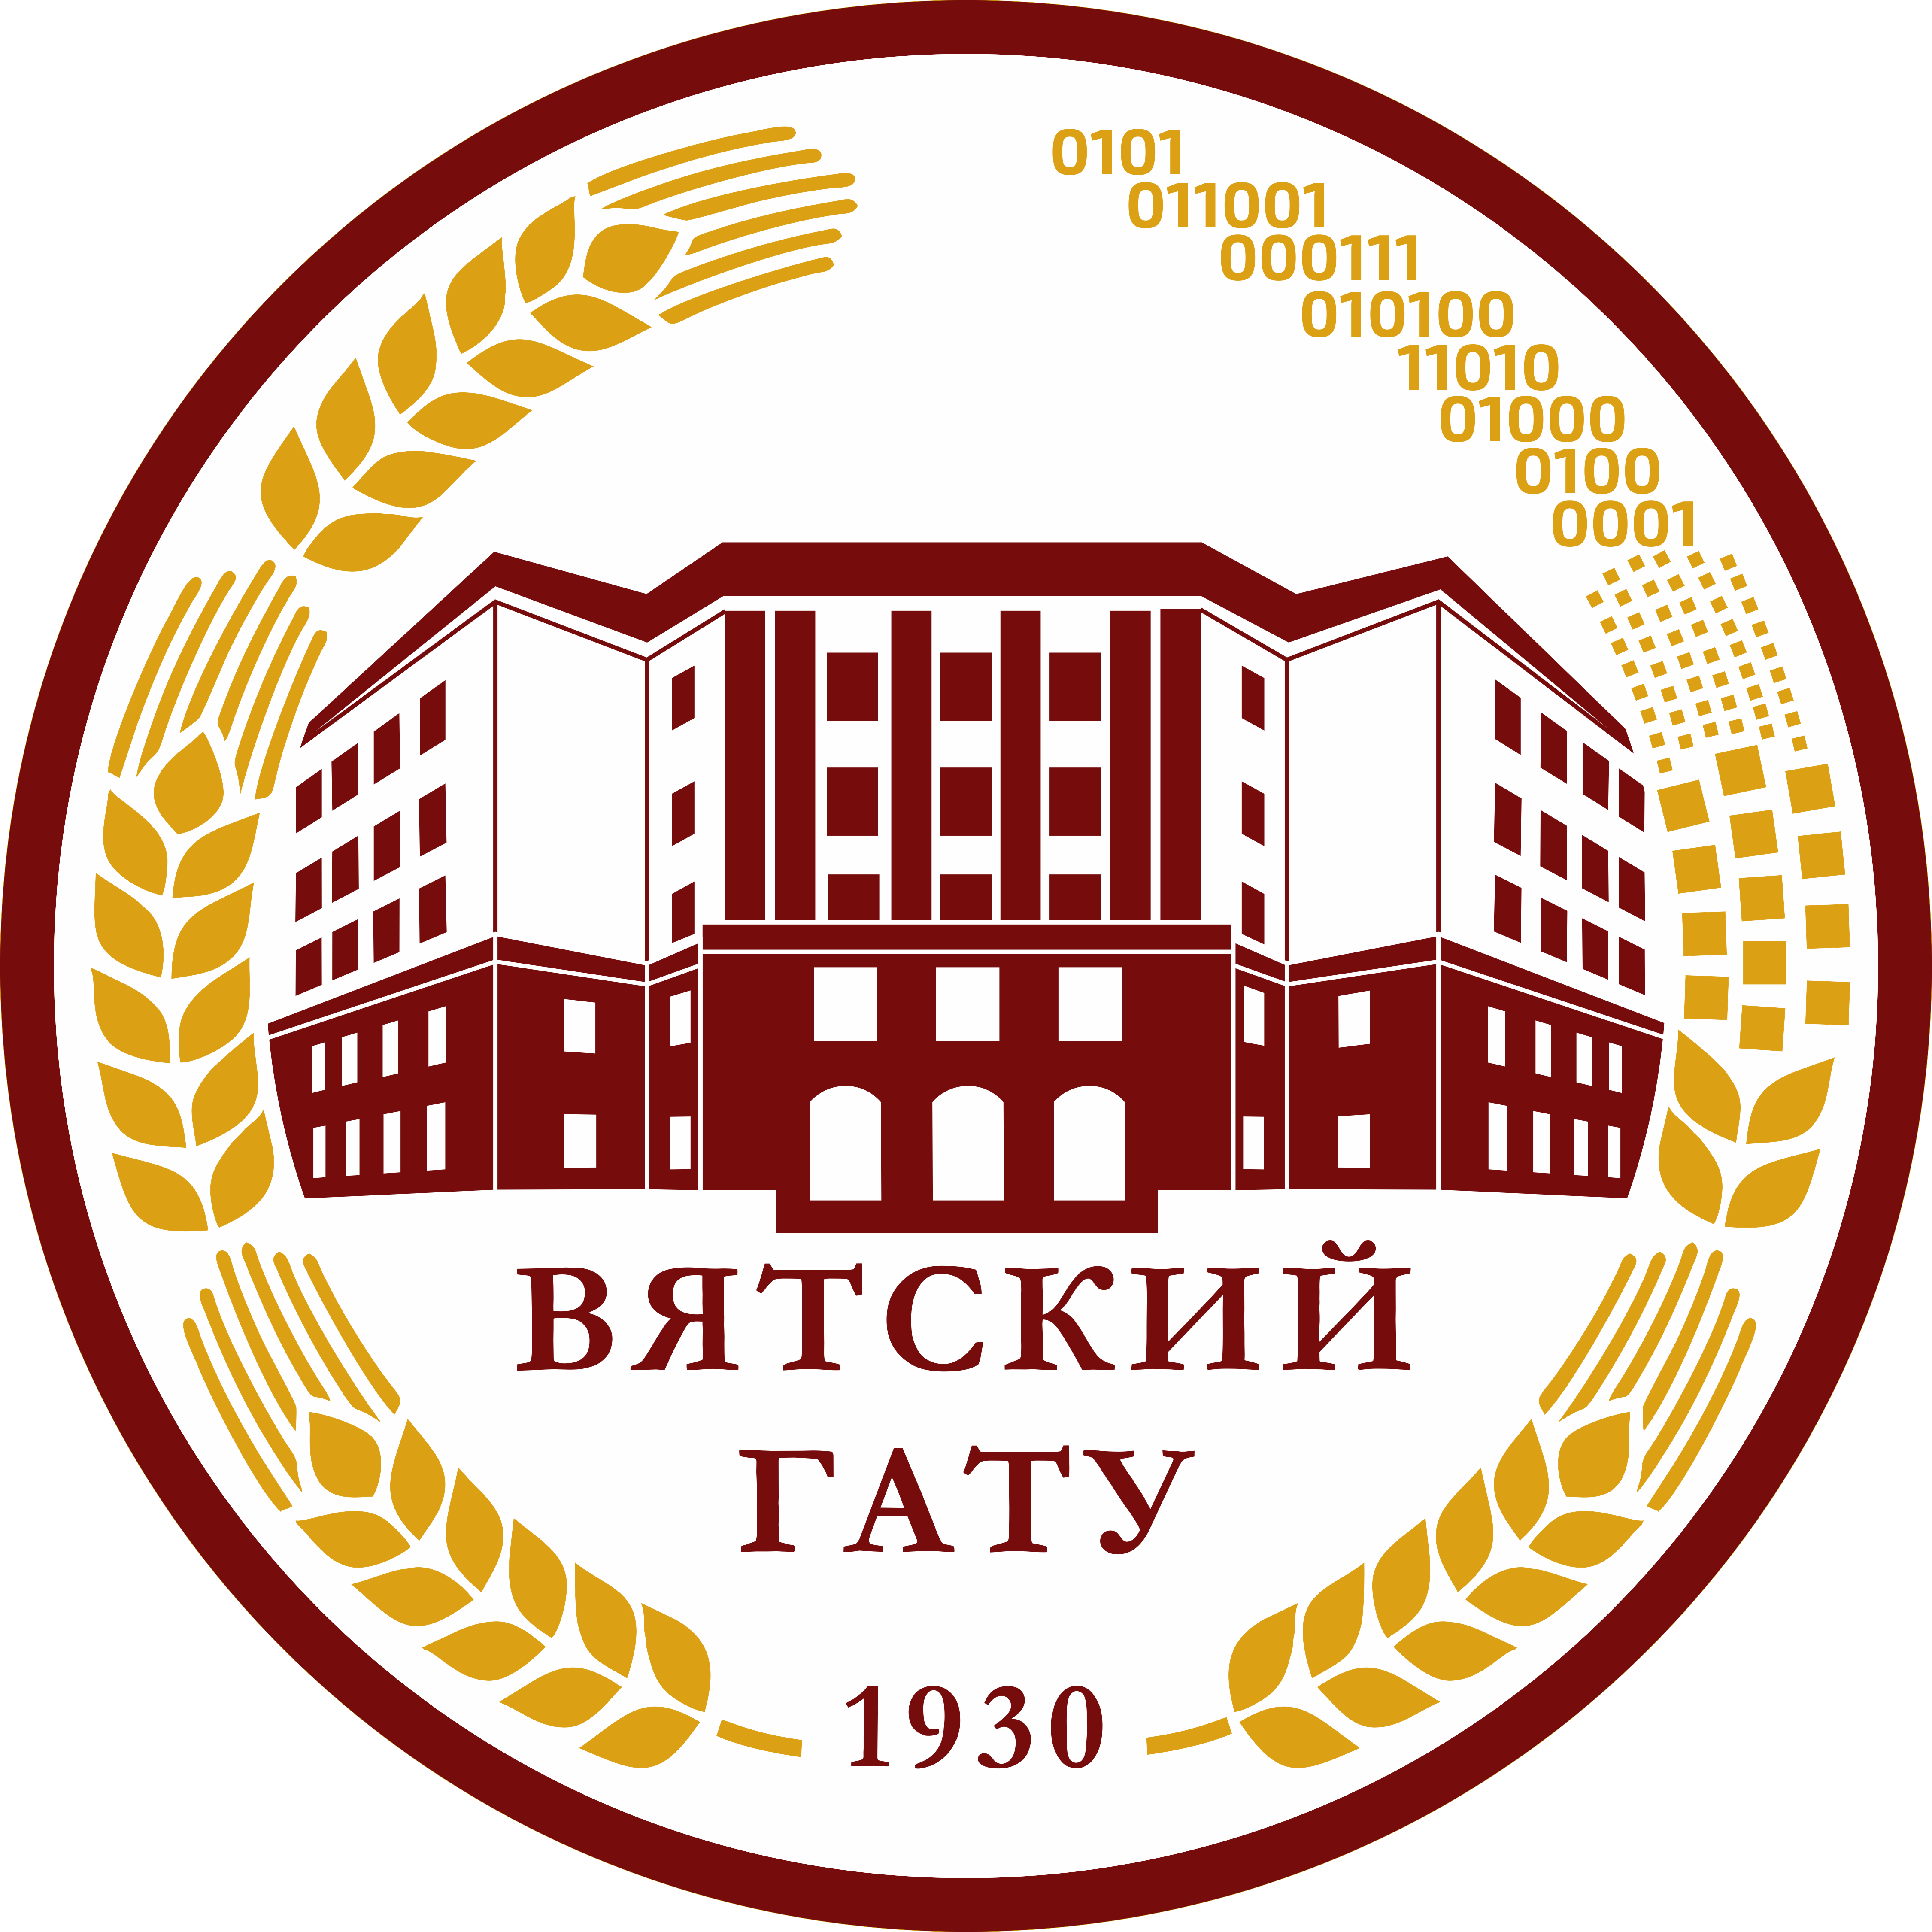 Вятский ГАТУ в первой лиге рейтинга независимой оценки высшего образования РФ!